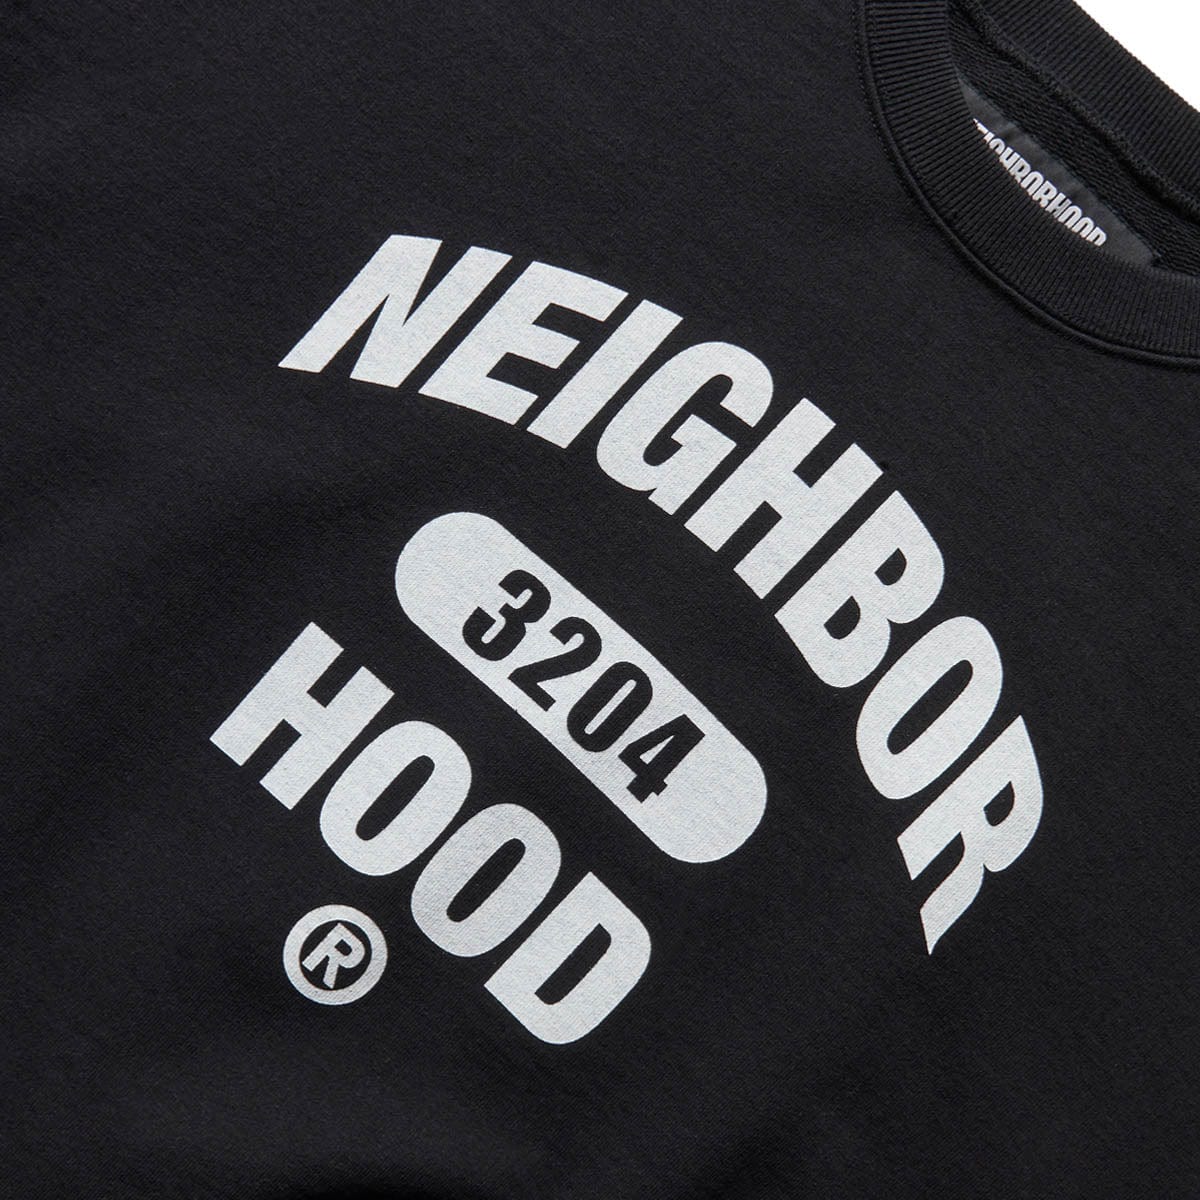 Neighborhood Hoodies & Sweatshirts COLLEGE SWEATSHIRT